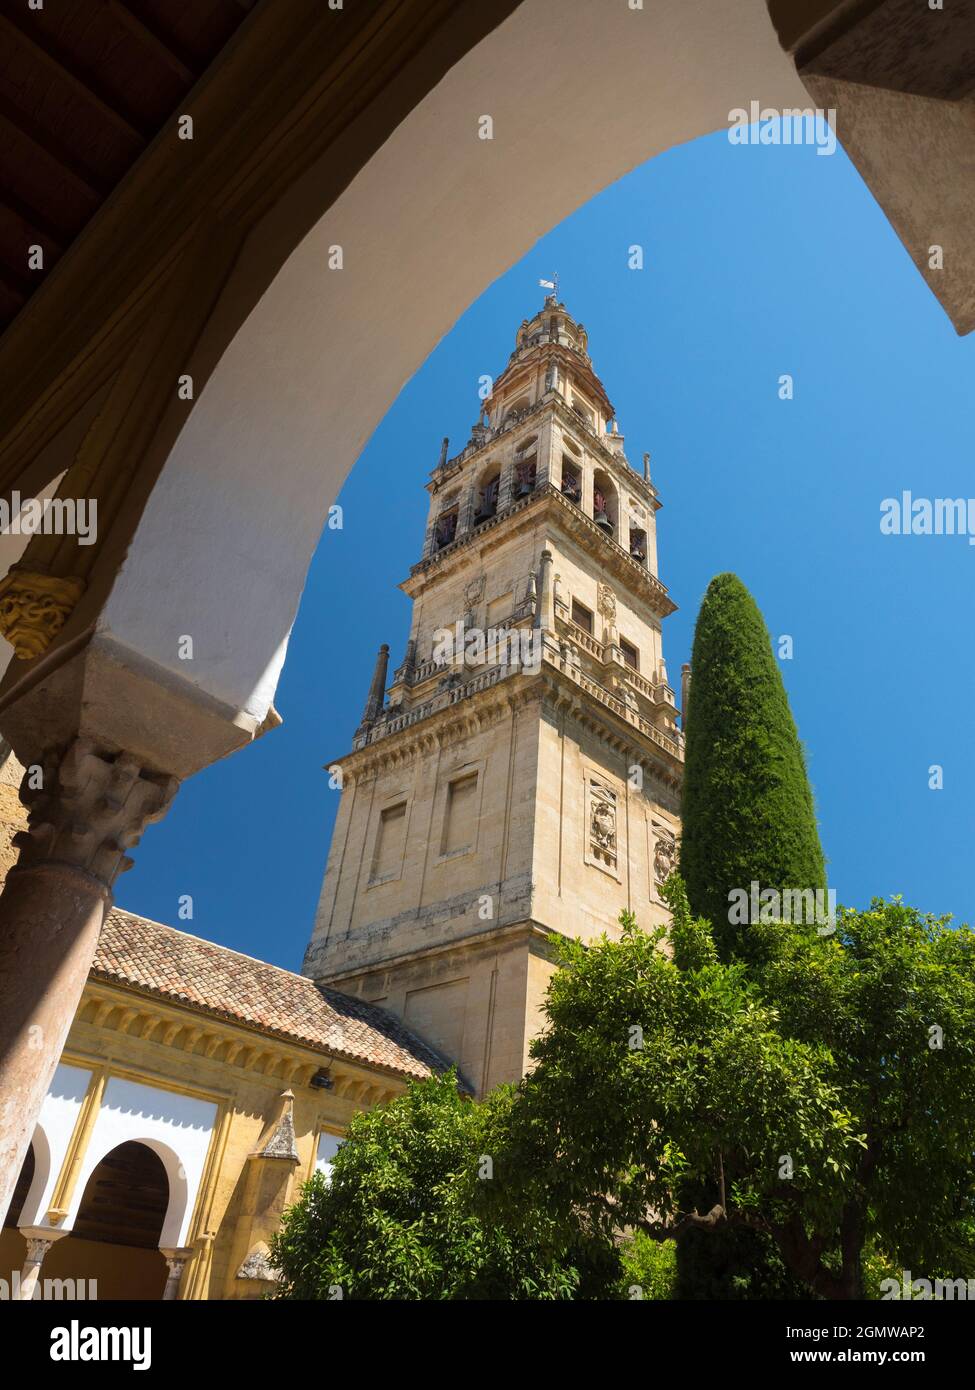 Cordoba, Spagna - 16 giugno 2015; nessuna gente in vista. La moschea-cattedrale di Mezquita a Cordoba, in Spagna, è un edificio davvero affascinante con un evento Foto Stock